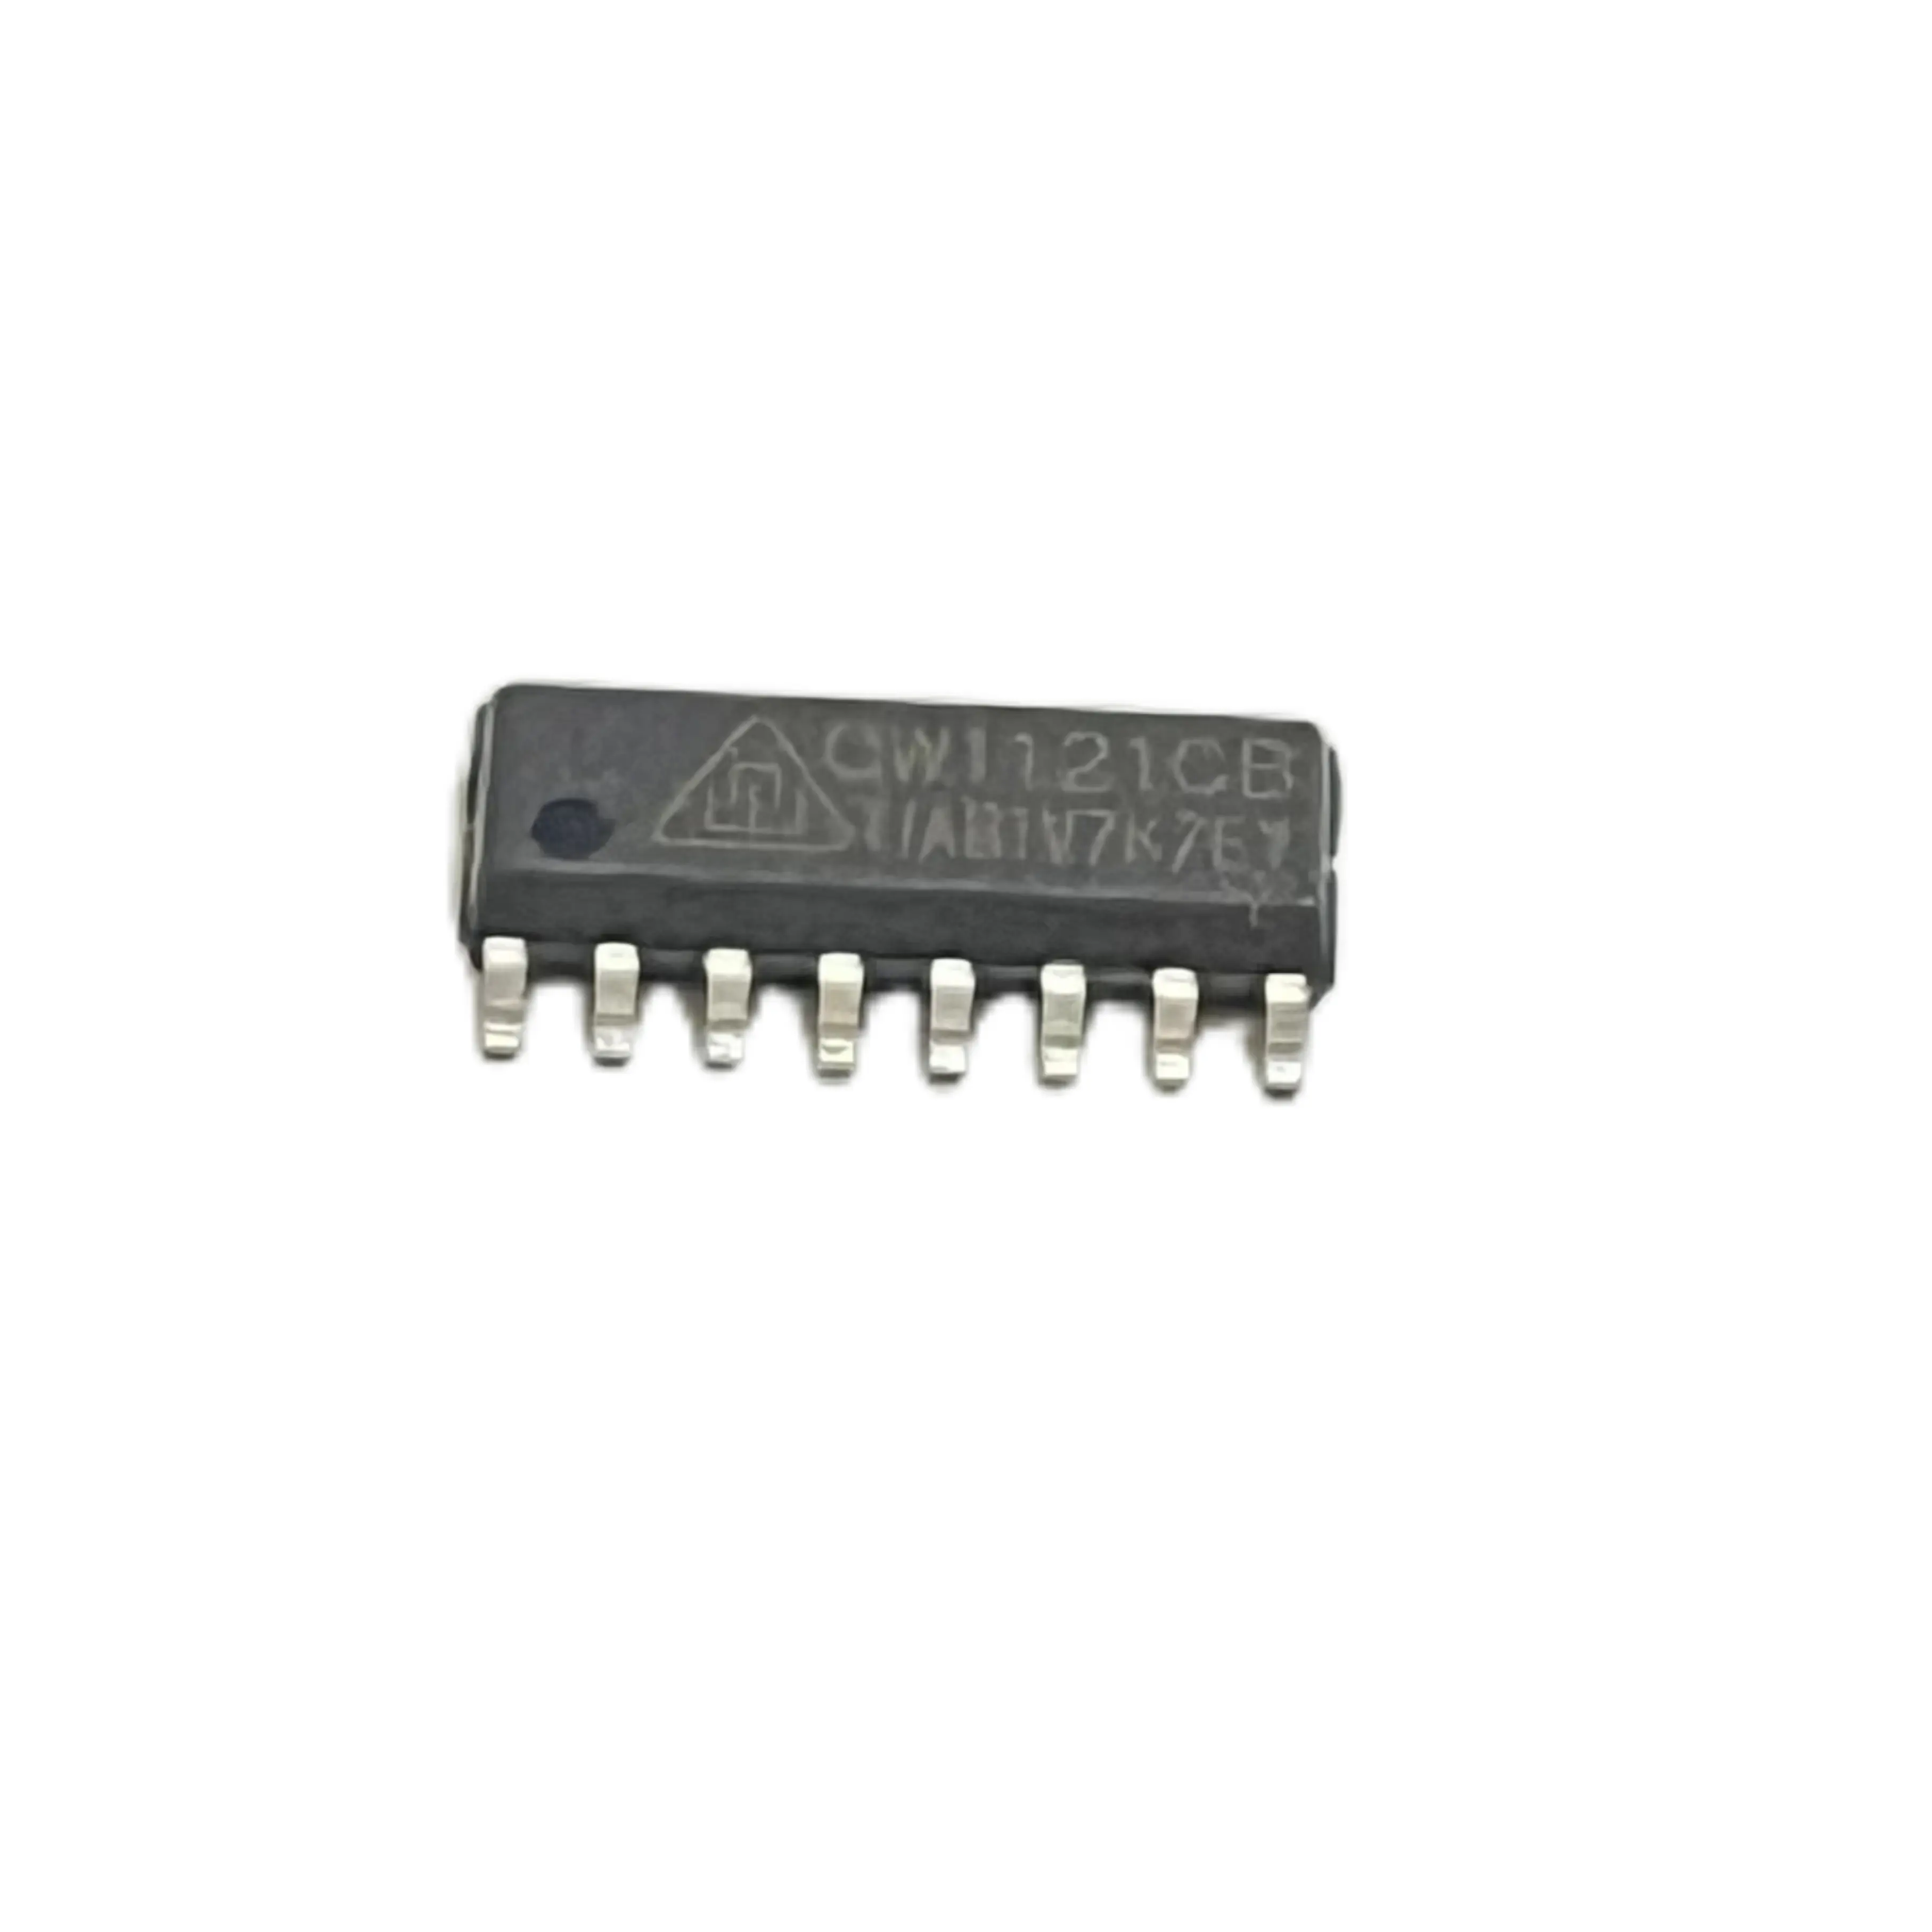 Chip IC con circuito integrado único CW1121CB, paquete SOP-16 y otros conectores de Material electrónico Smd, sustituye a YD1821B